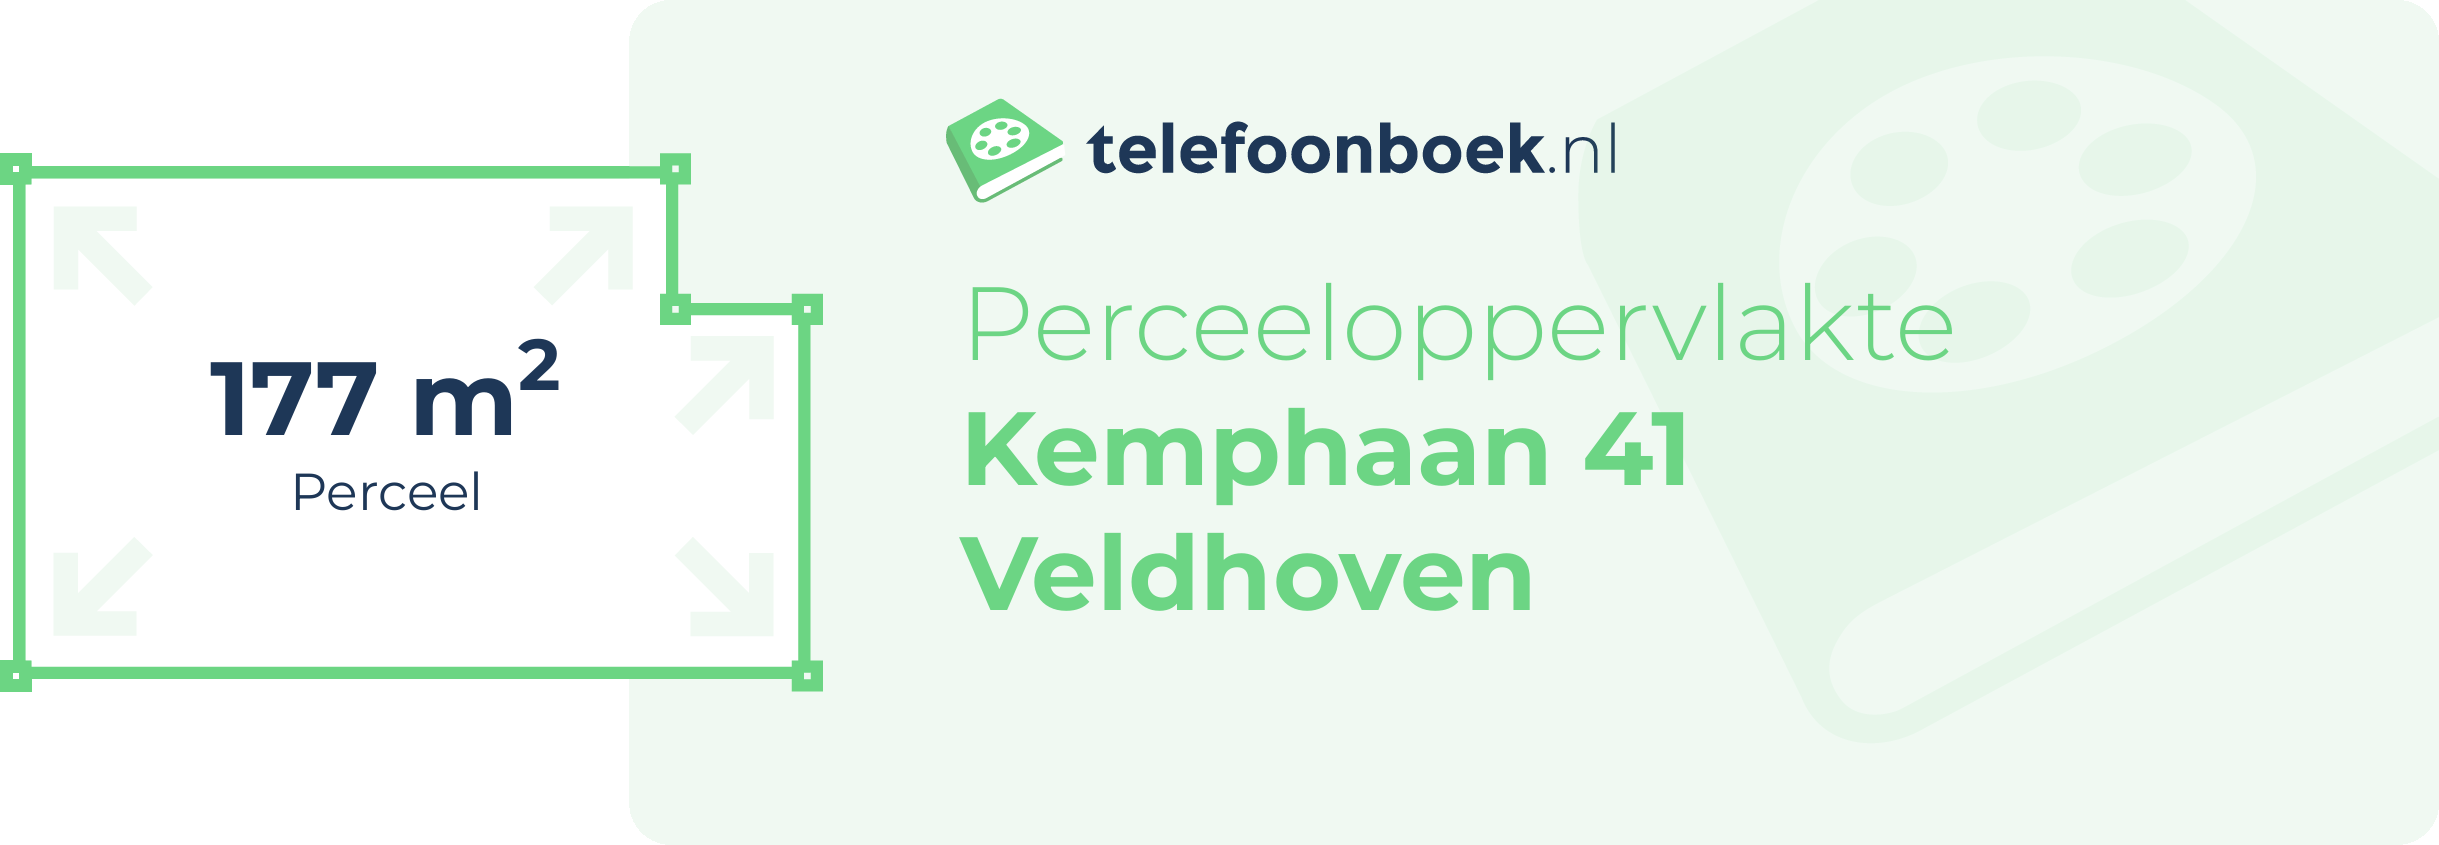 Perceeloppervlakte Kemphaan 41 Veldhoven